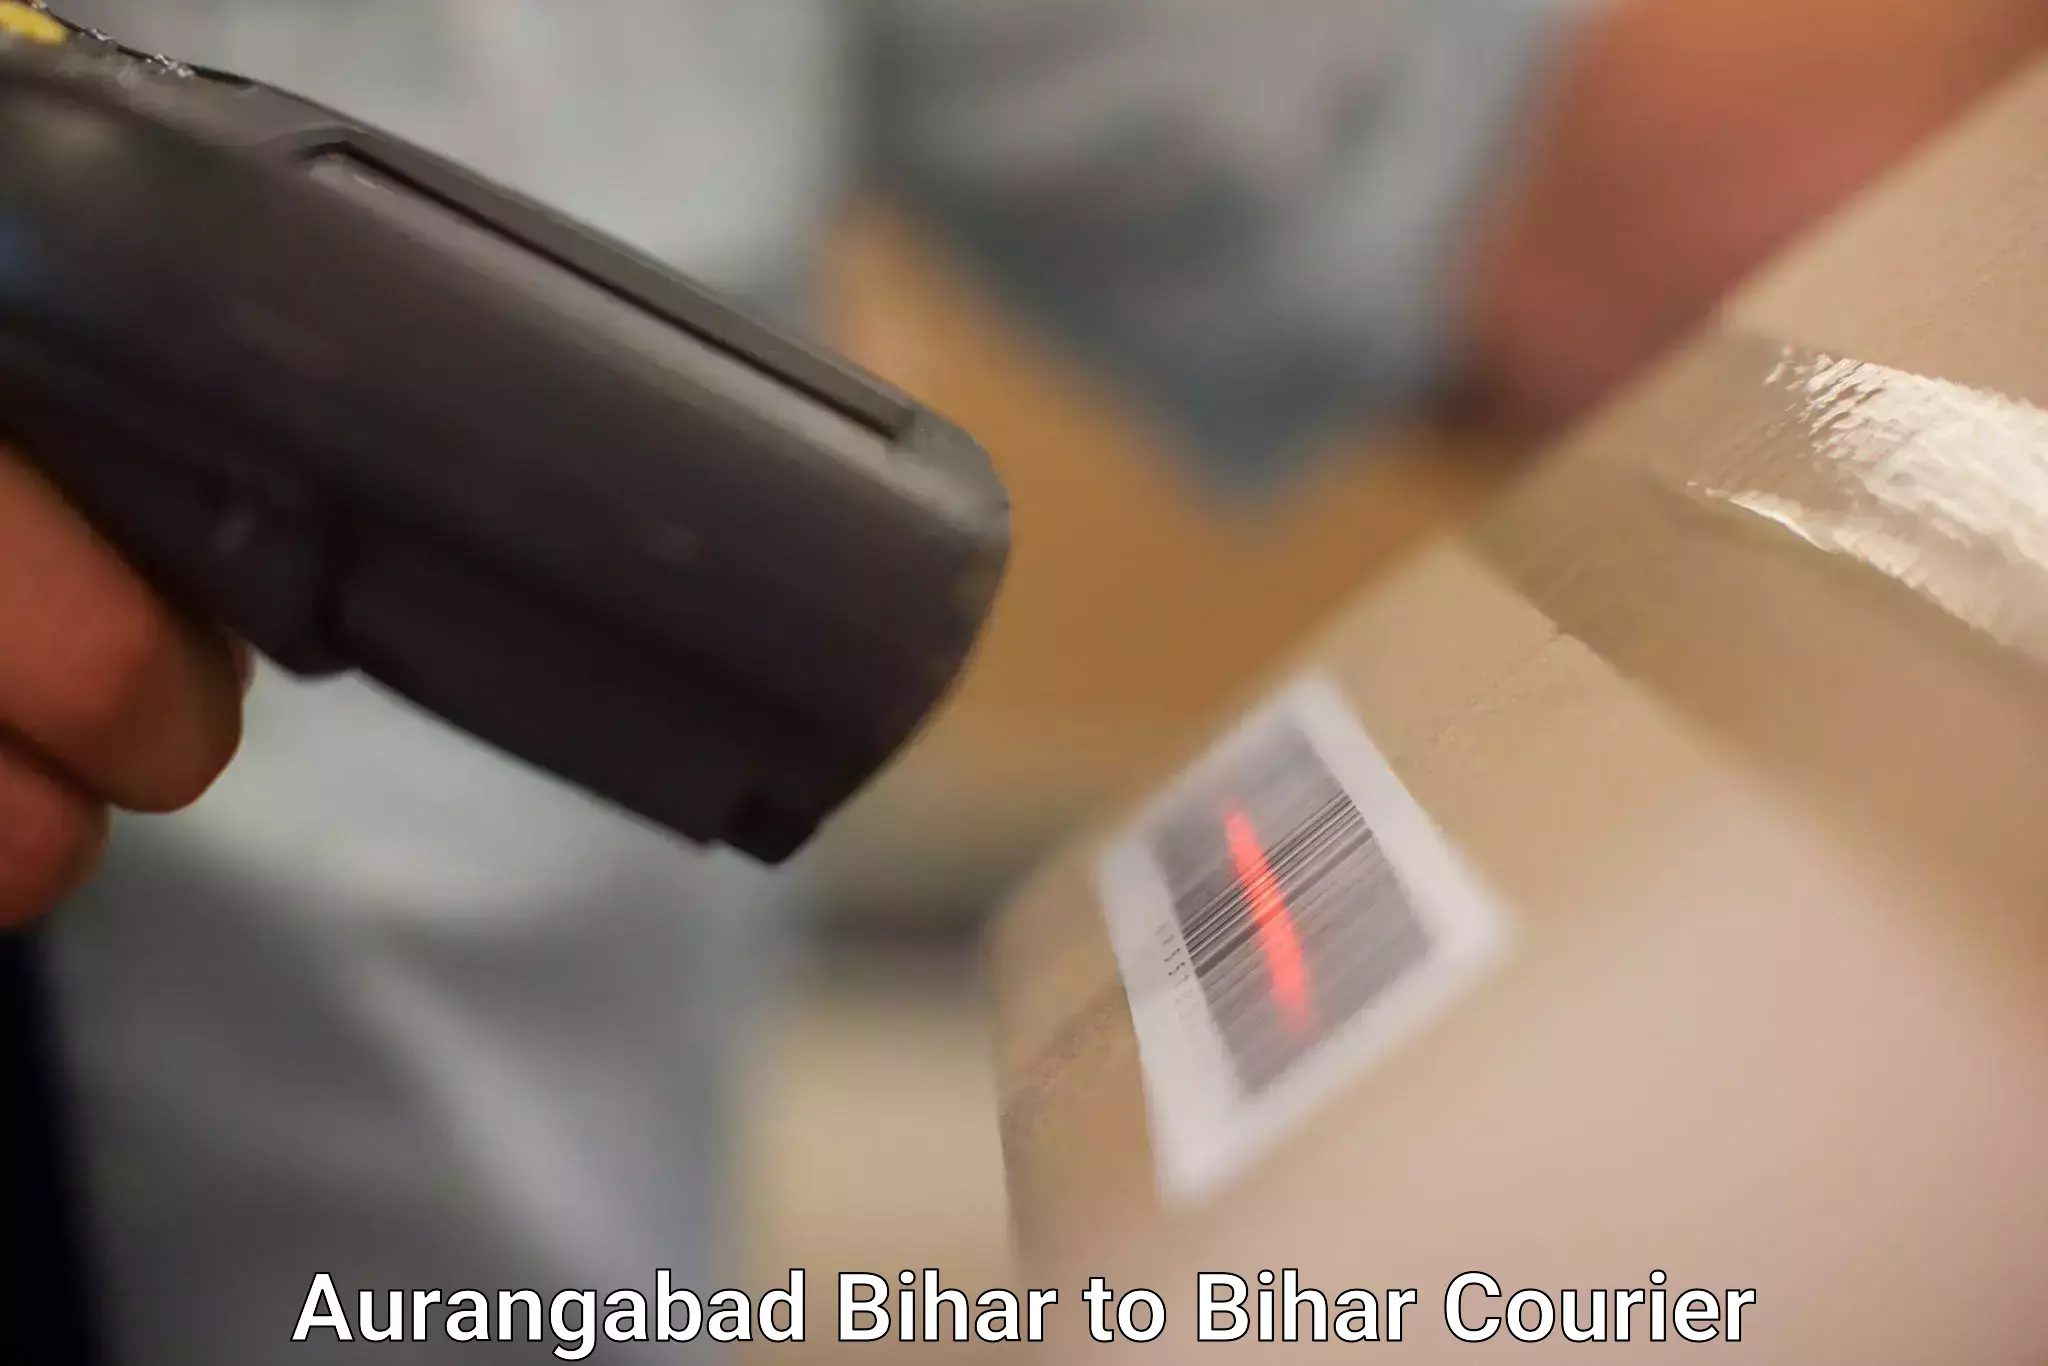 Door-to-door freight service Aurangabad Bihar to Barauni